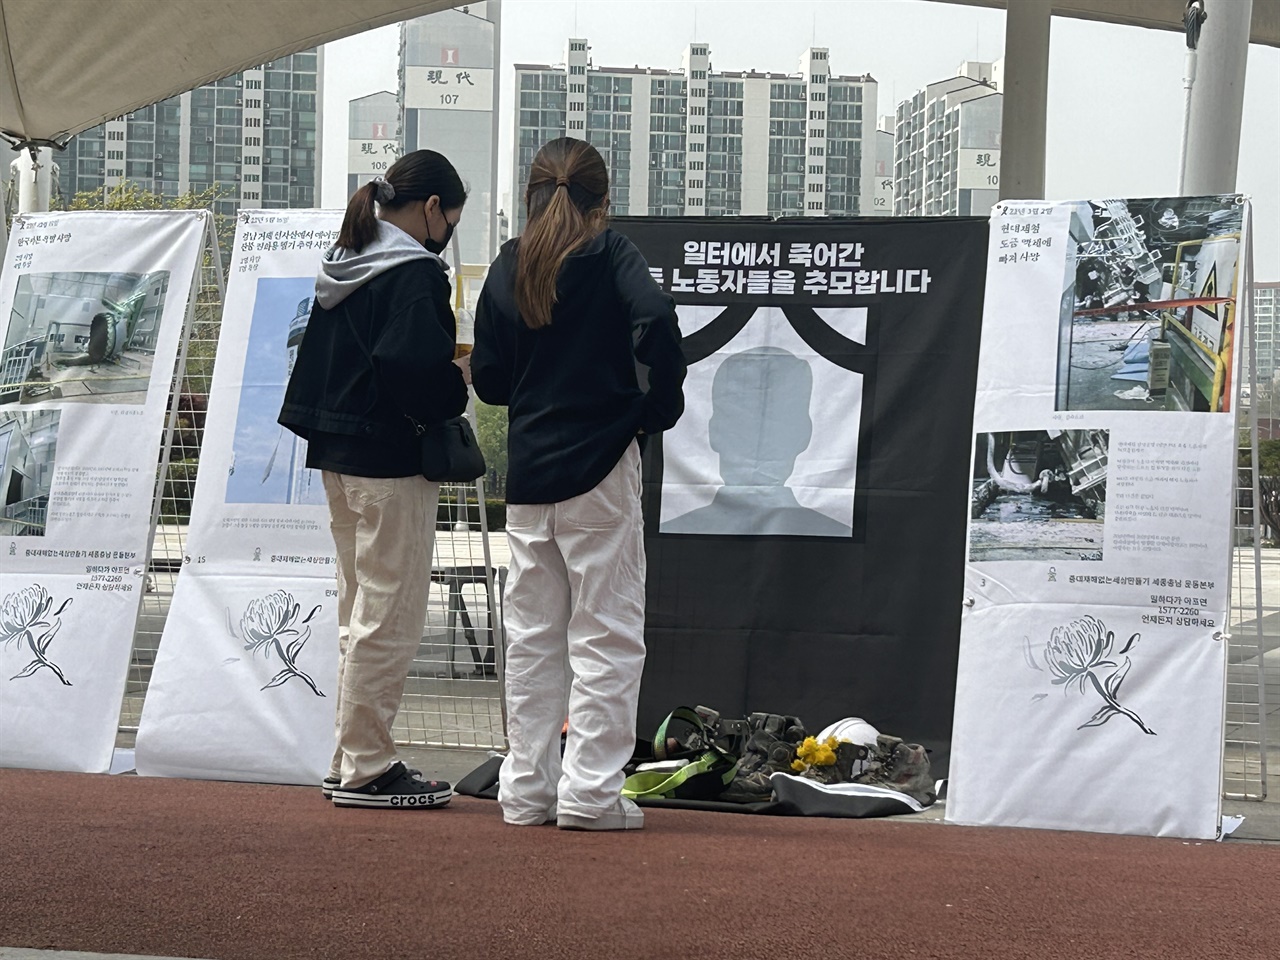 세월호 참사 9주기 기억식에는 재해로 사망한 노동자들을 추모하는 공간도 마련됐다. 청소년들이 재해로 사망한 노동자를 추모하고 있다. 